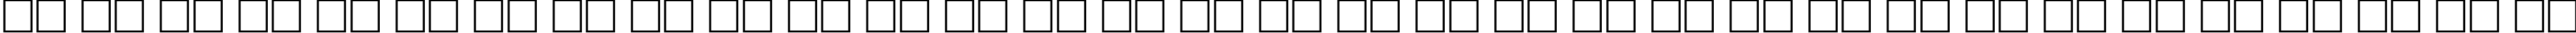 Пример написания русского алфавита шрифтом Mason Regular